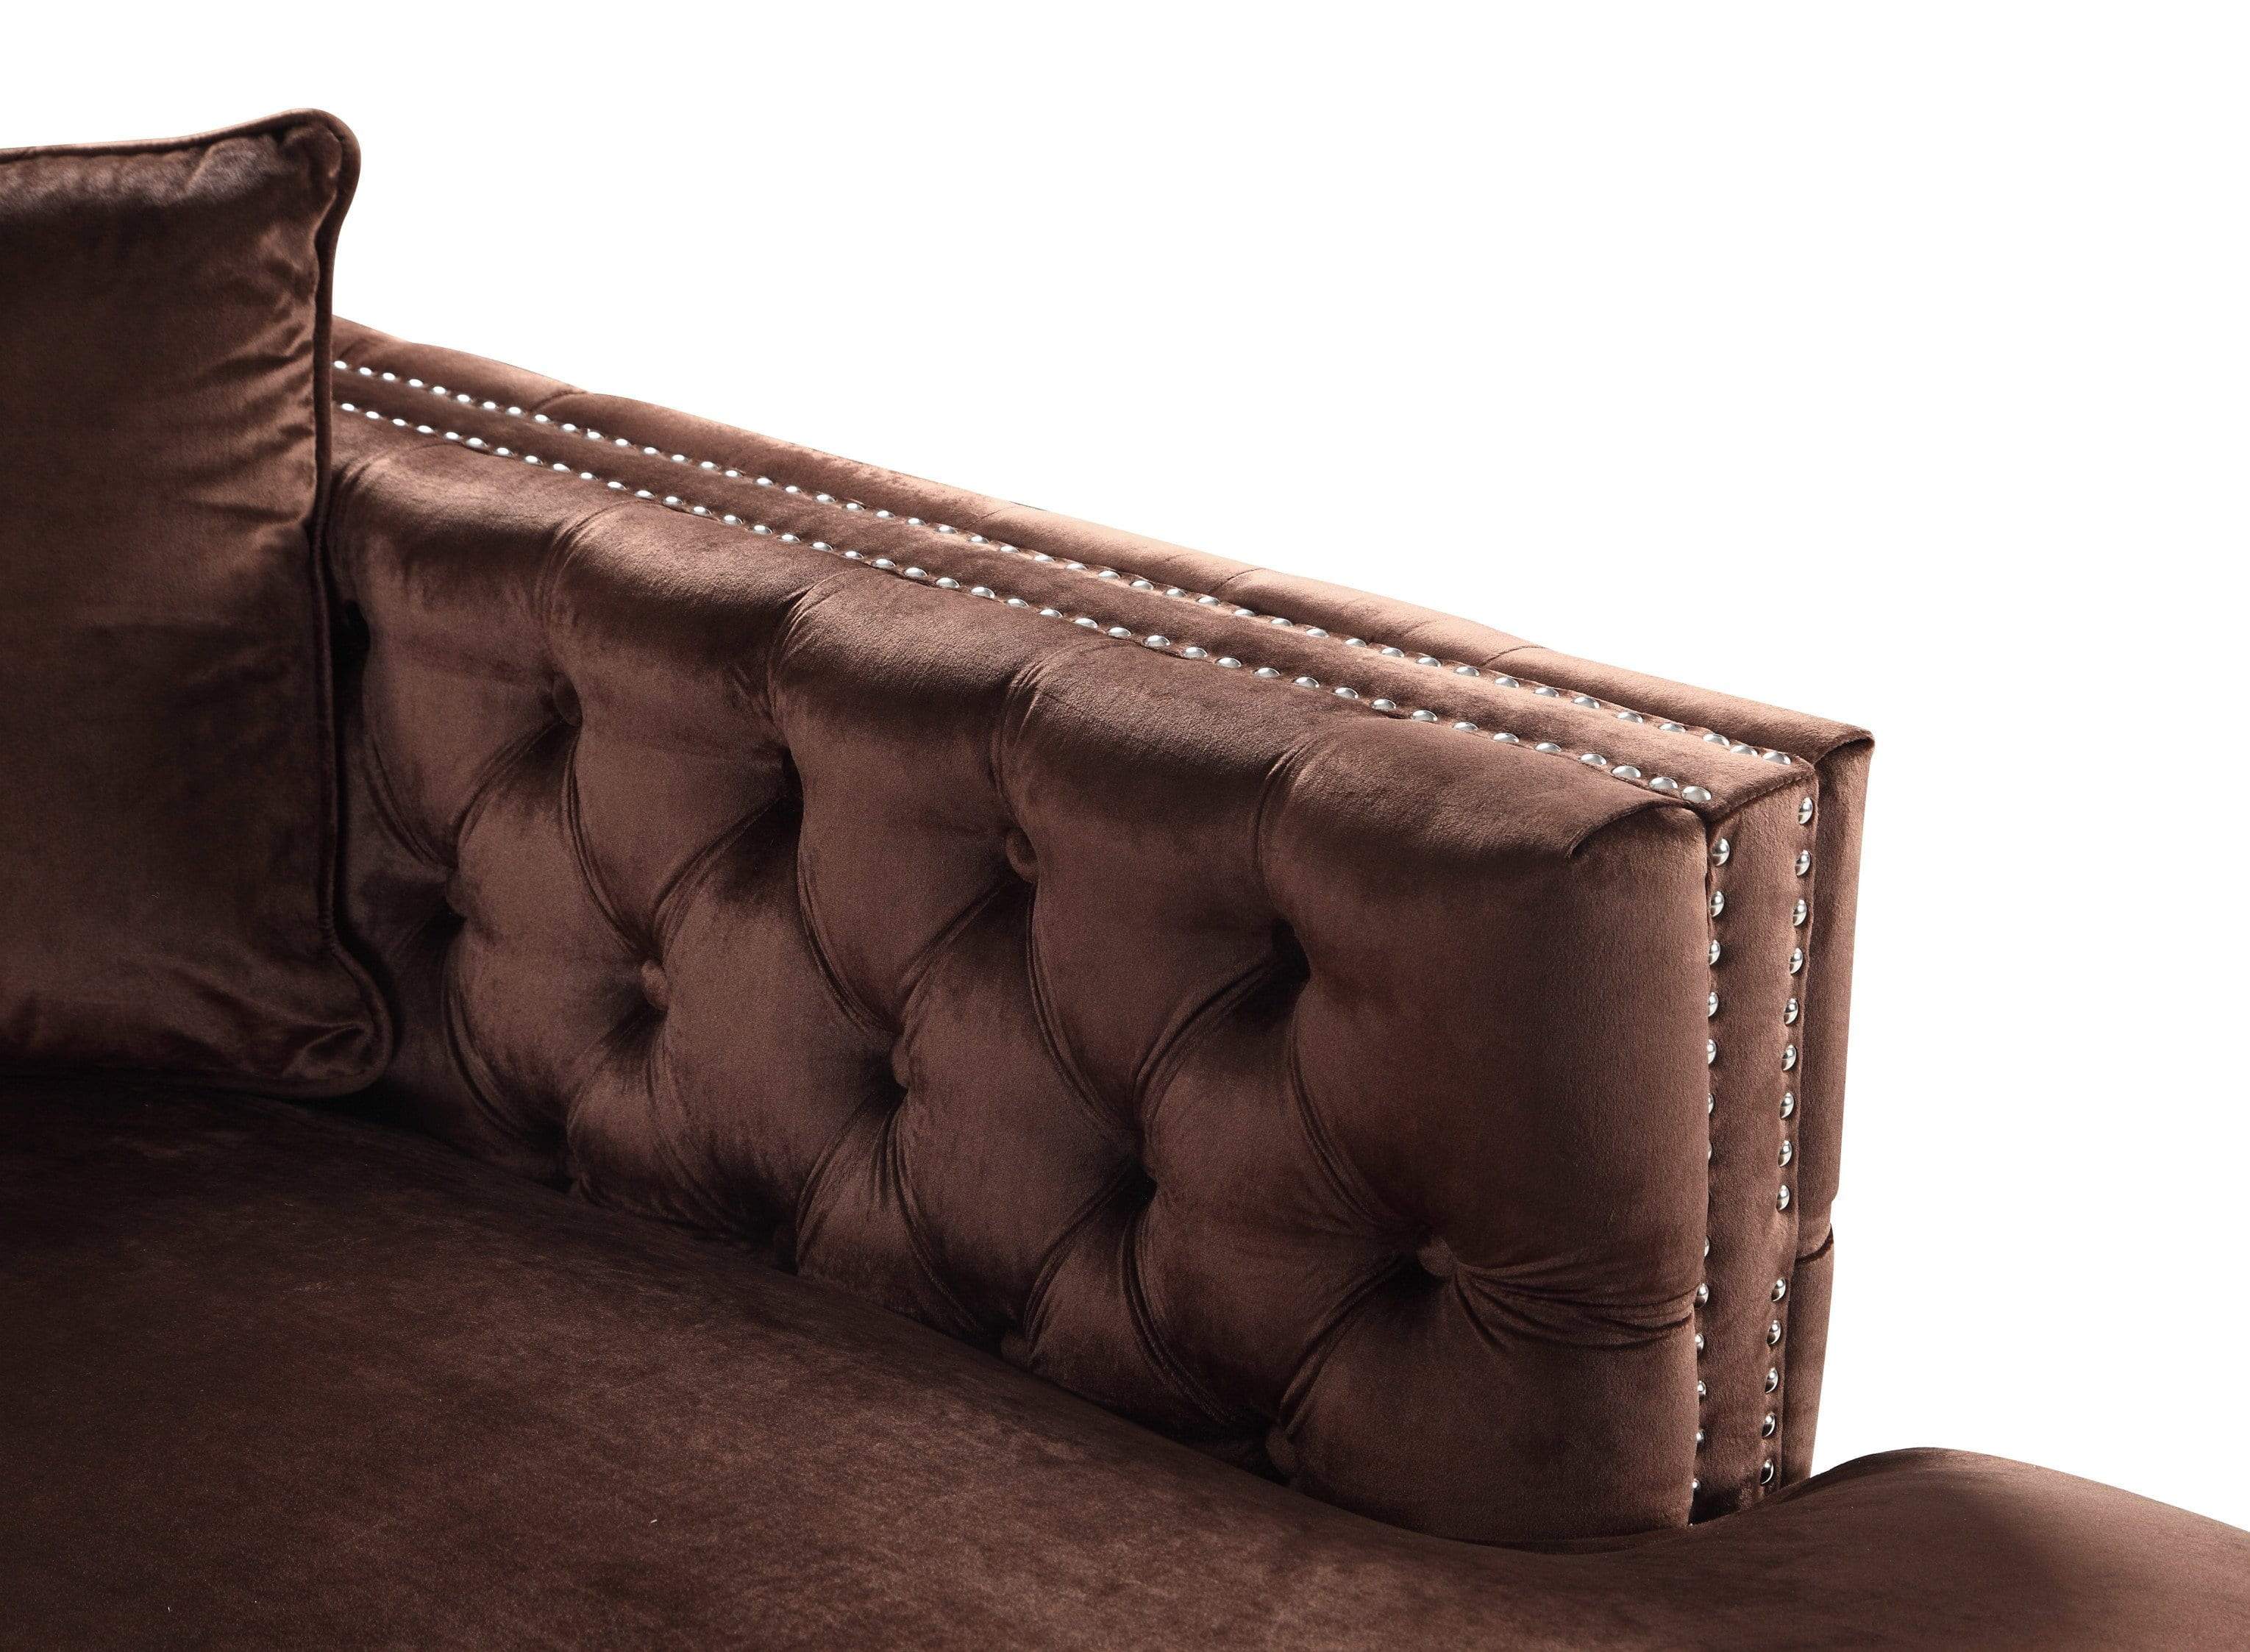 Monet Right Facing Tufted Velvet Sectional Sofa